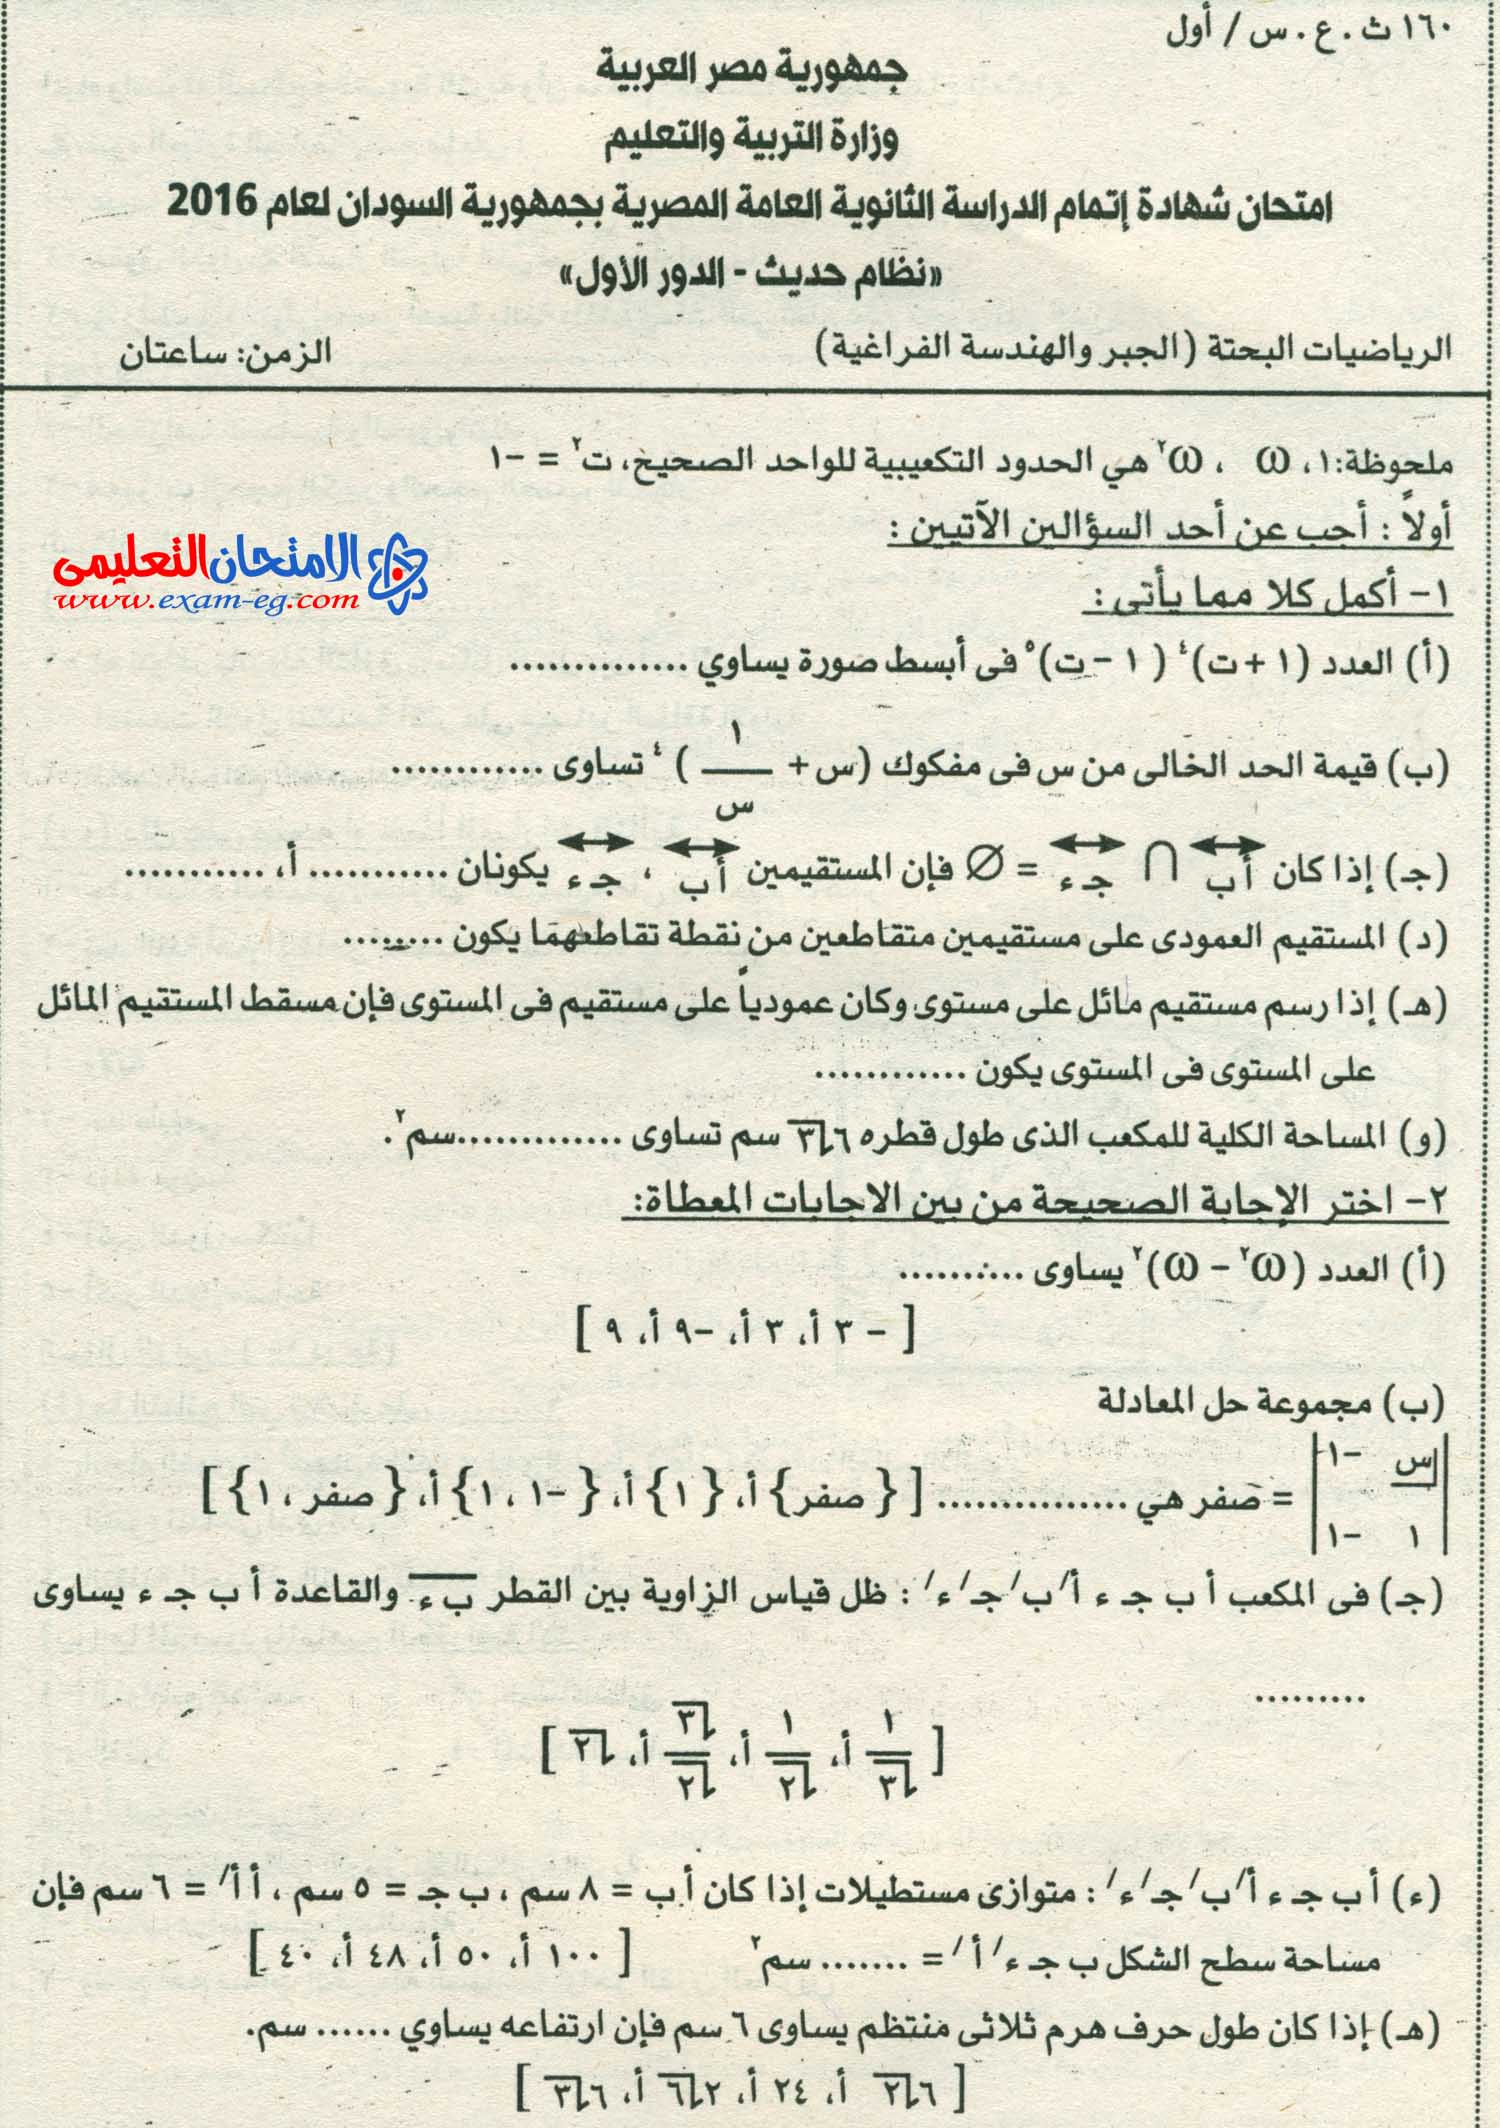 امتحان السودان 2016 في الجبر والهندسة الفراغية للثانوية العامة + الاجابة النموذجية exam-eg.com_14611004